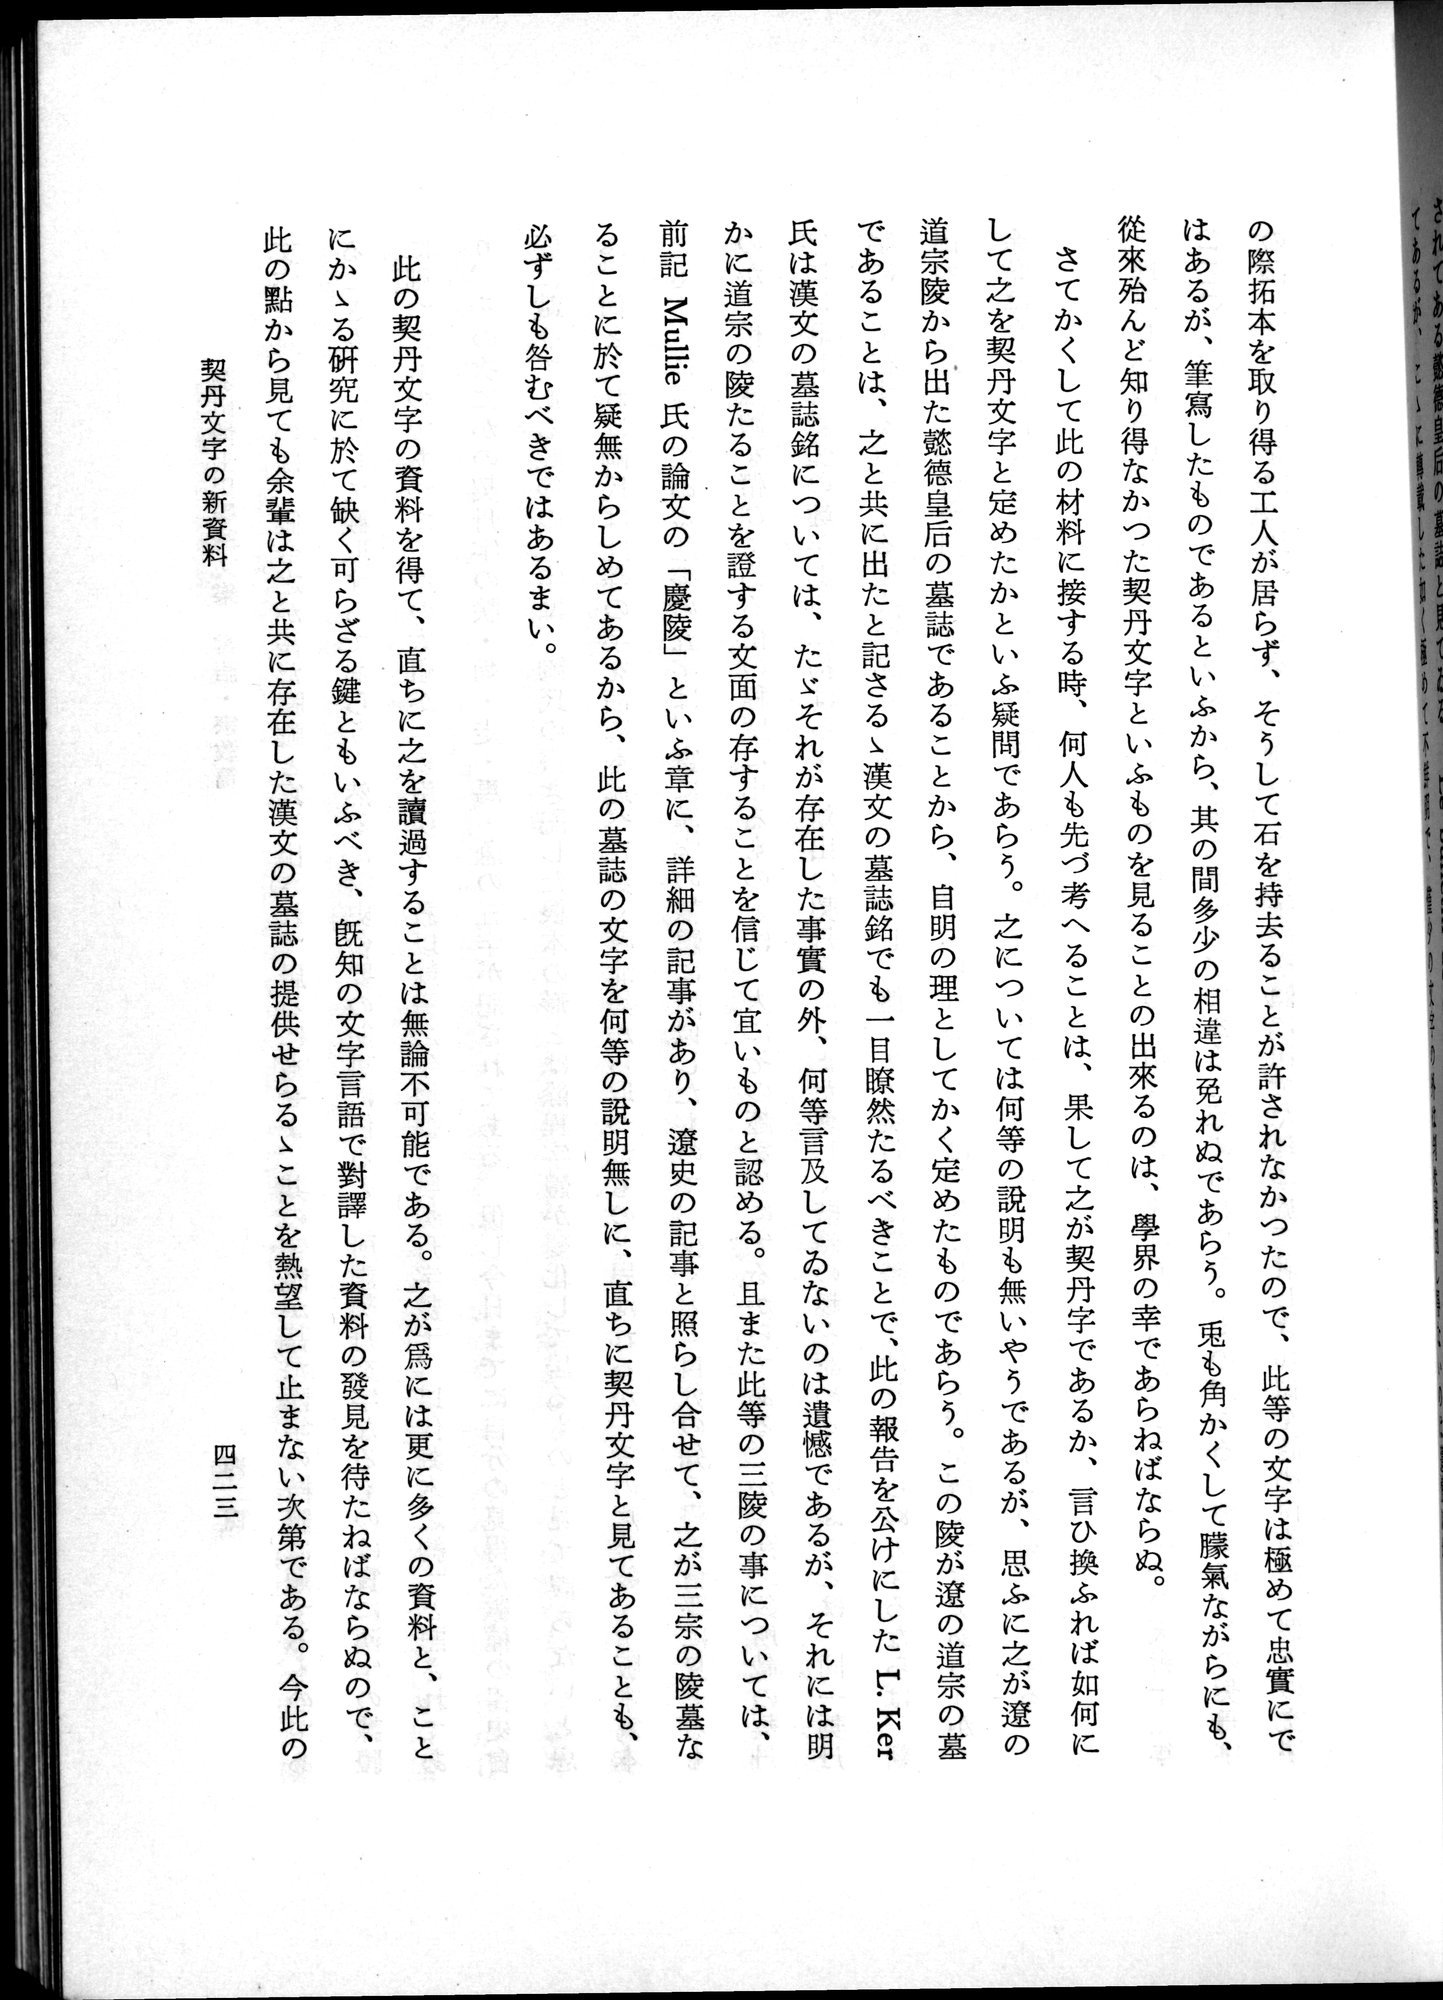 羽田博士史学論文集 : vol.2 / Page 485 (Grayscale High Resolution Image)